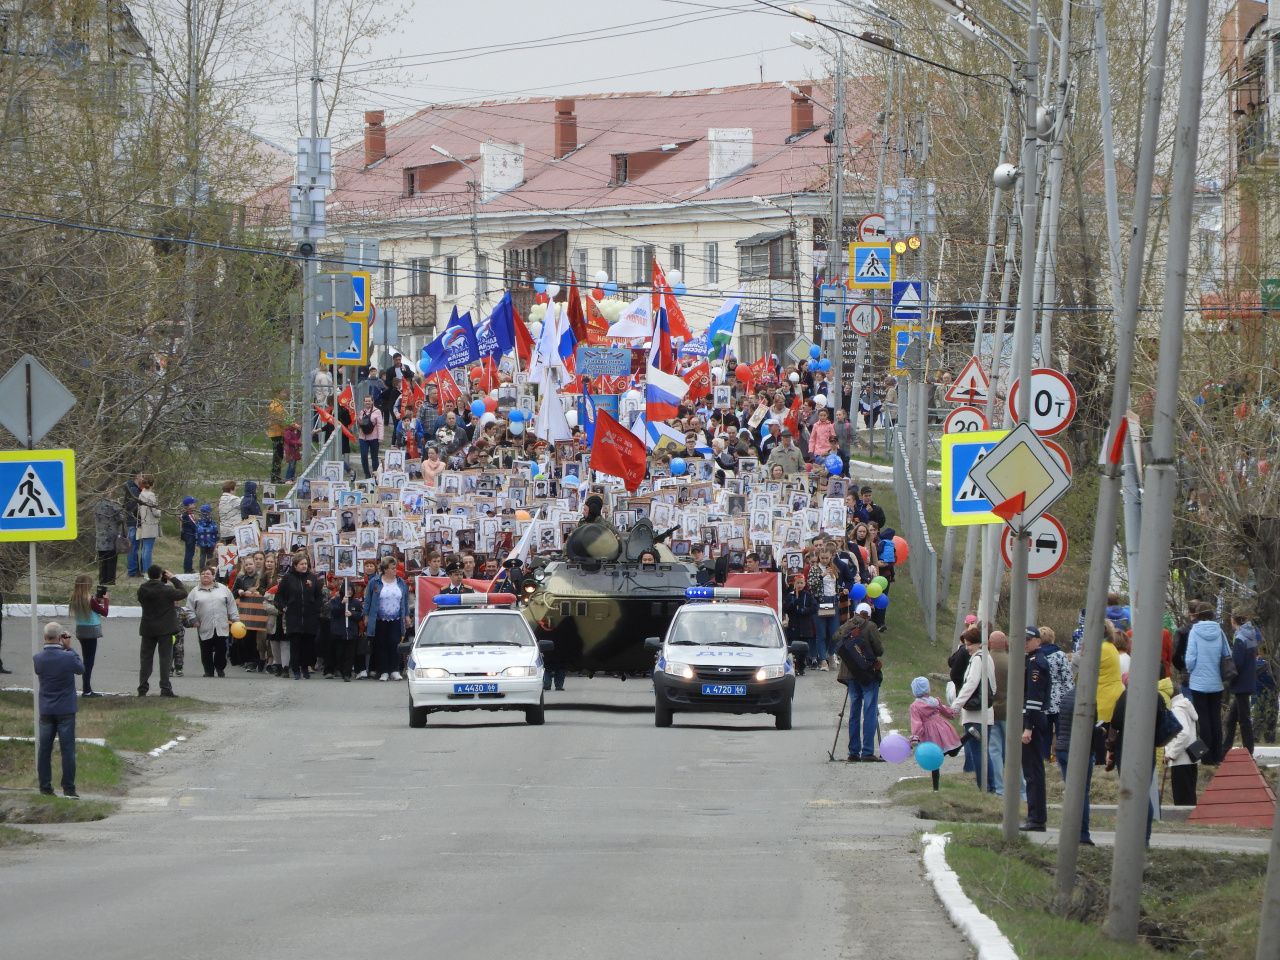 Шествие, присяга и фейерверк: как День Победы пройдет в Карпинске